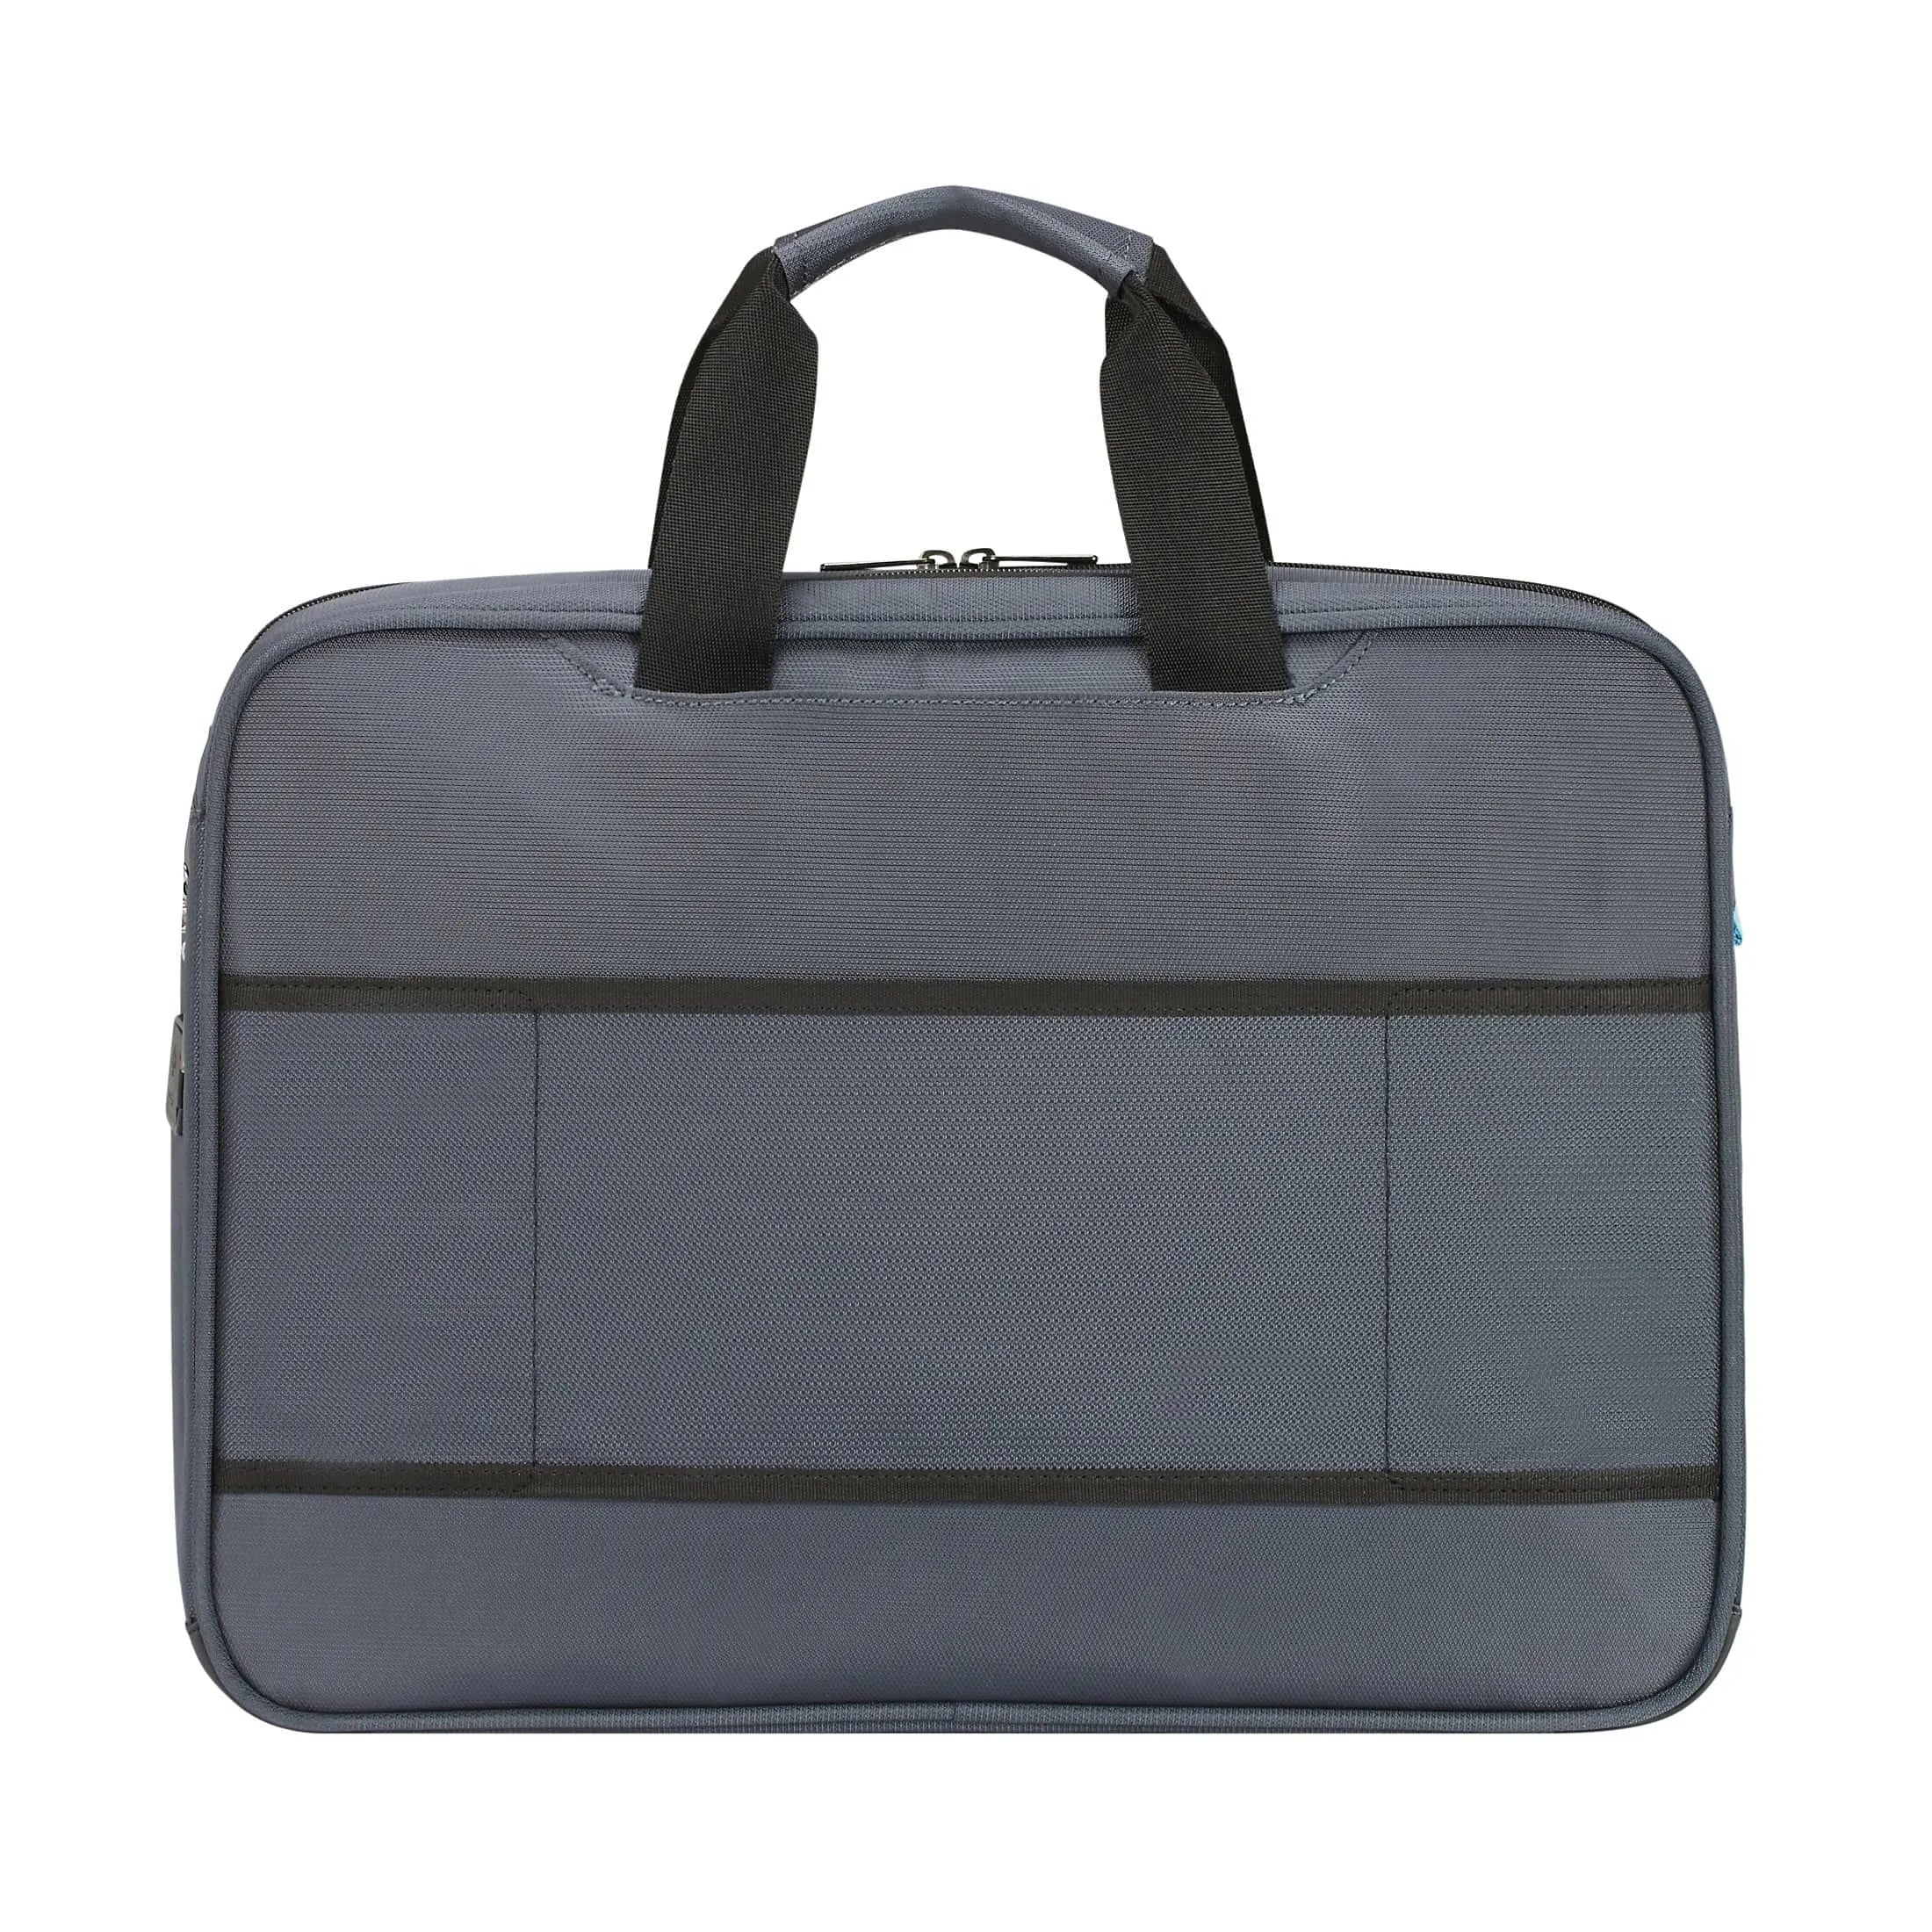 Samsonite Vectura Evo briefcase 44 cm - black